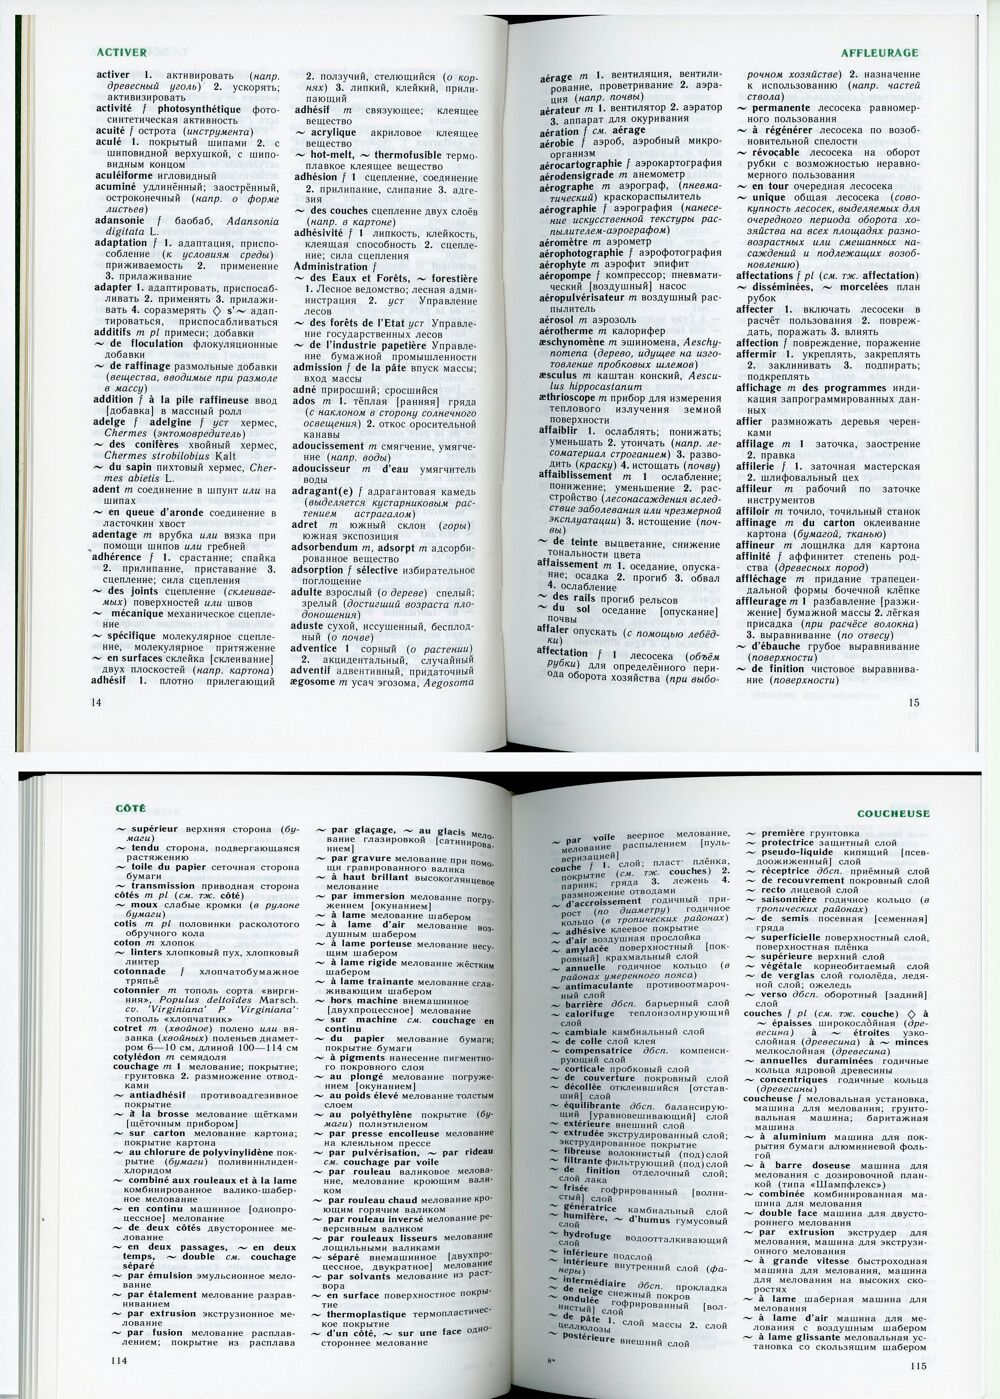 Dictionnaire du bois et papier Fran&ccedil;ais-Russe Livres et BD